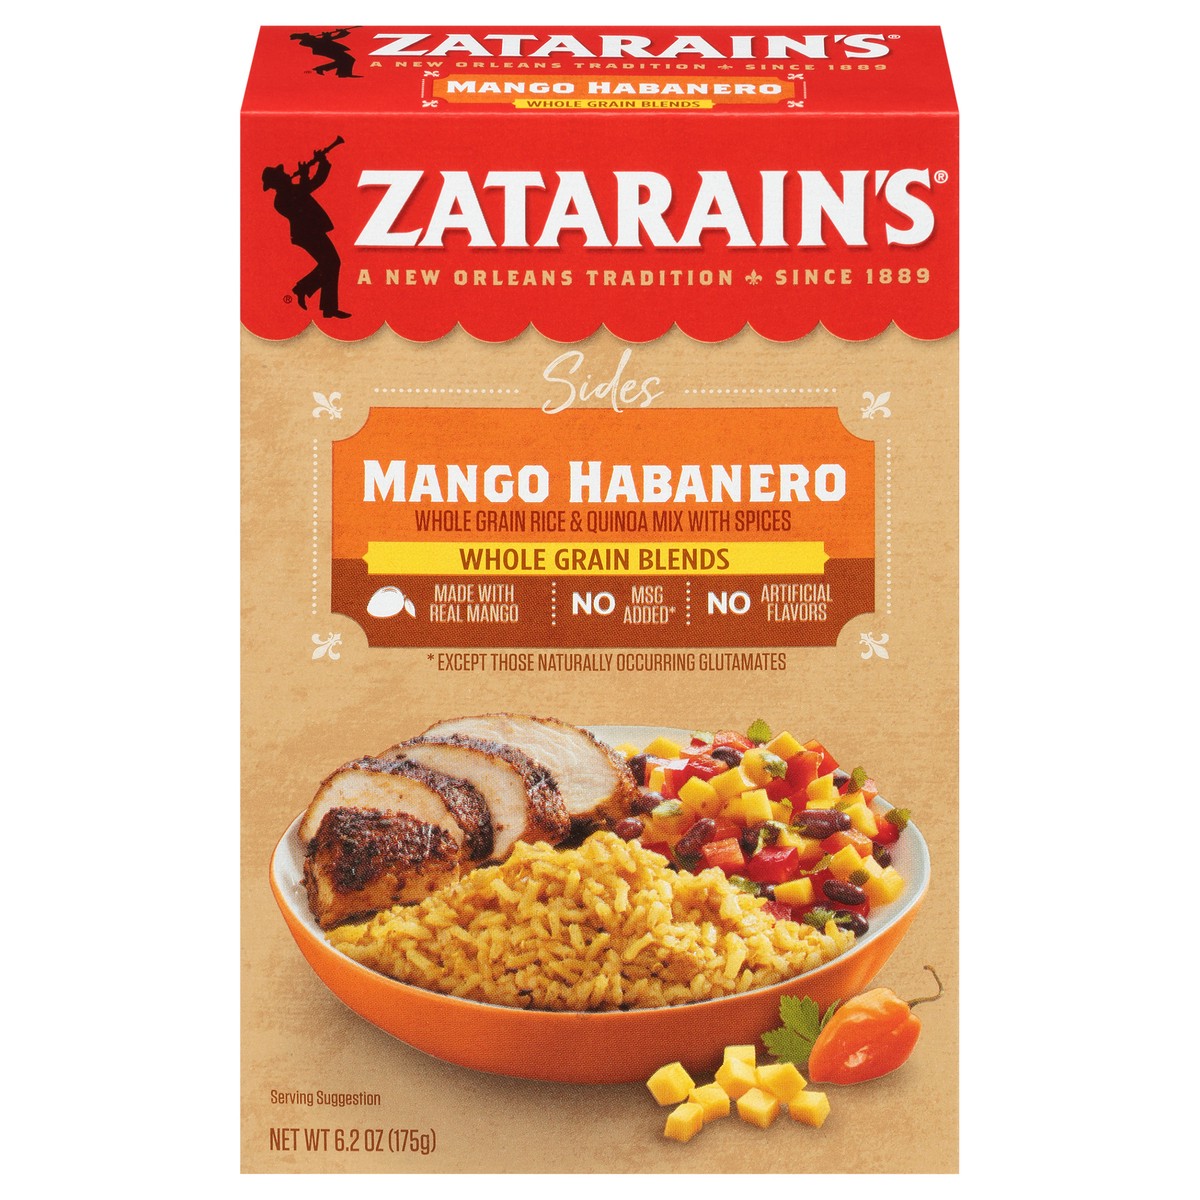 slide 1 of 9, Zatarain's Sides Mango Habanero Rice & Quinoa Whole Grain Blends 6.2 oz. Box, 6.2 oz